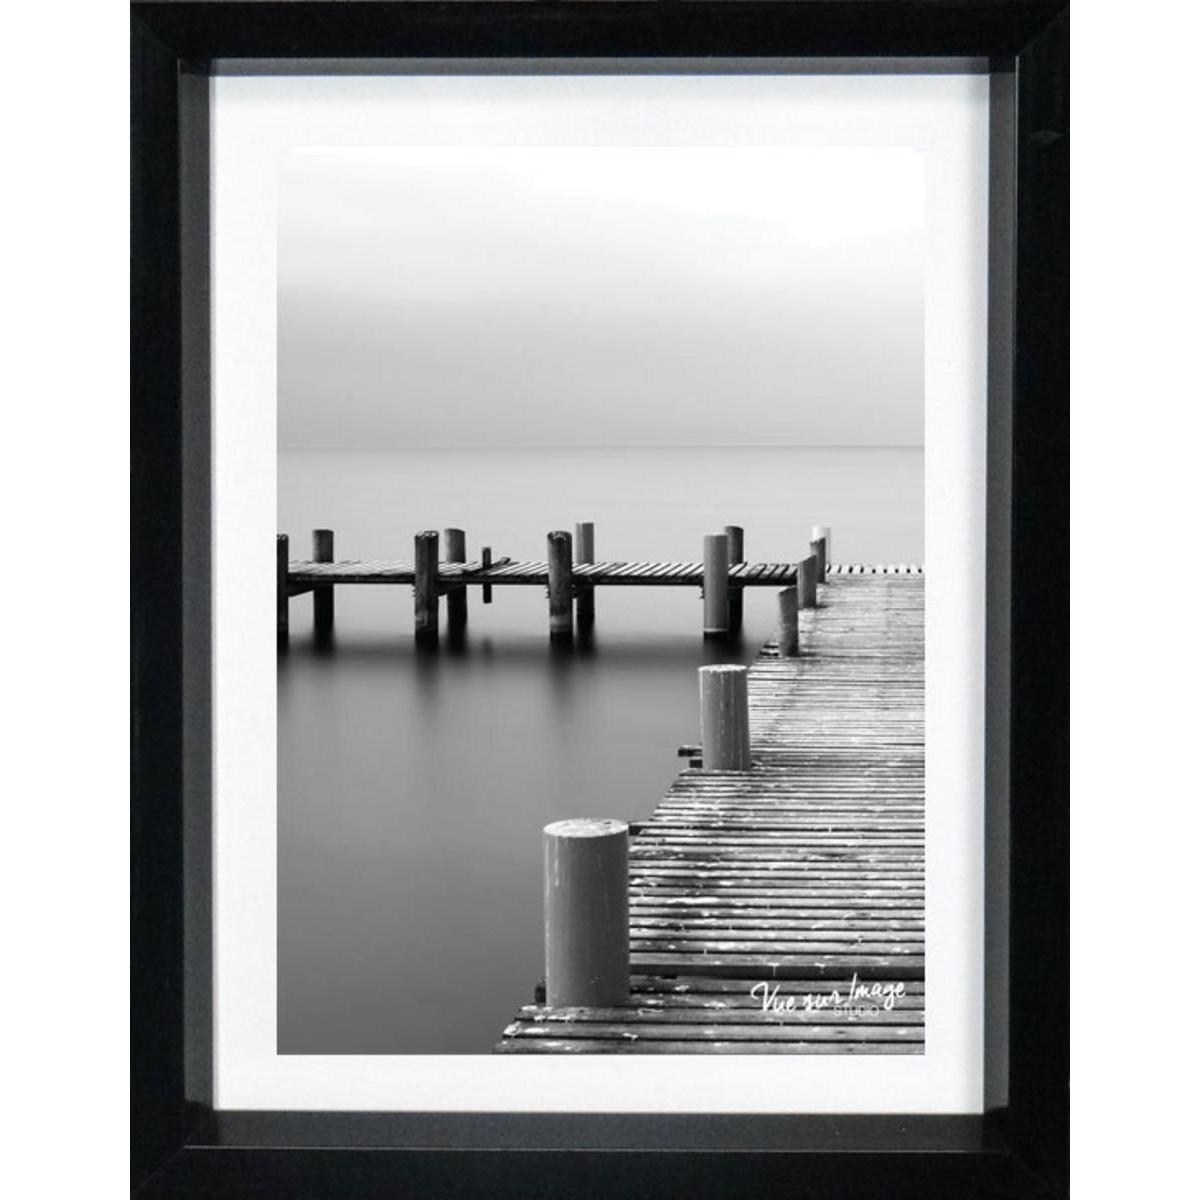 Cadre photo décoratif - Plastique - 15 x 20 cm - Noir et blanc